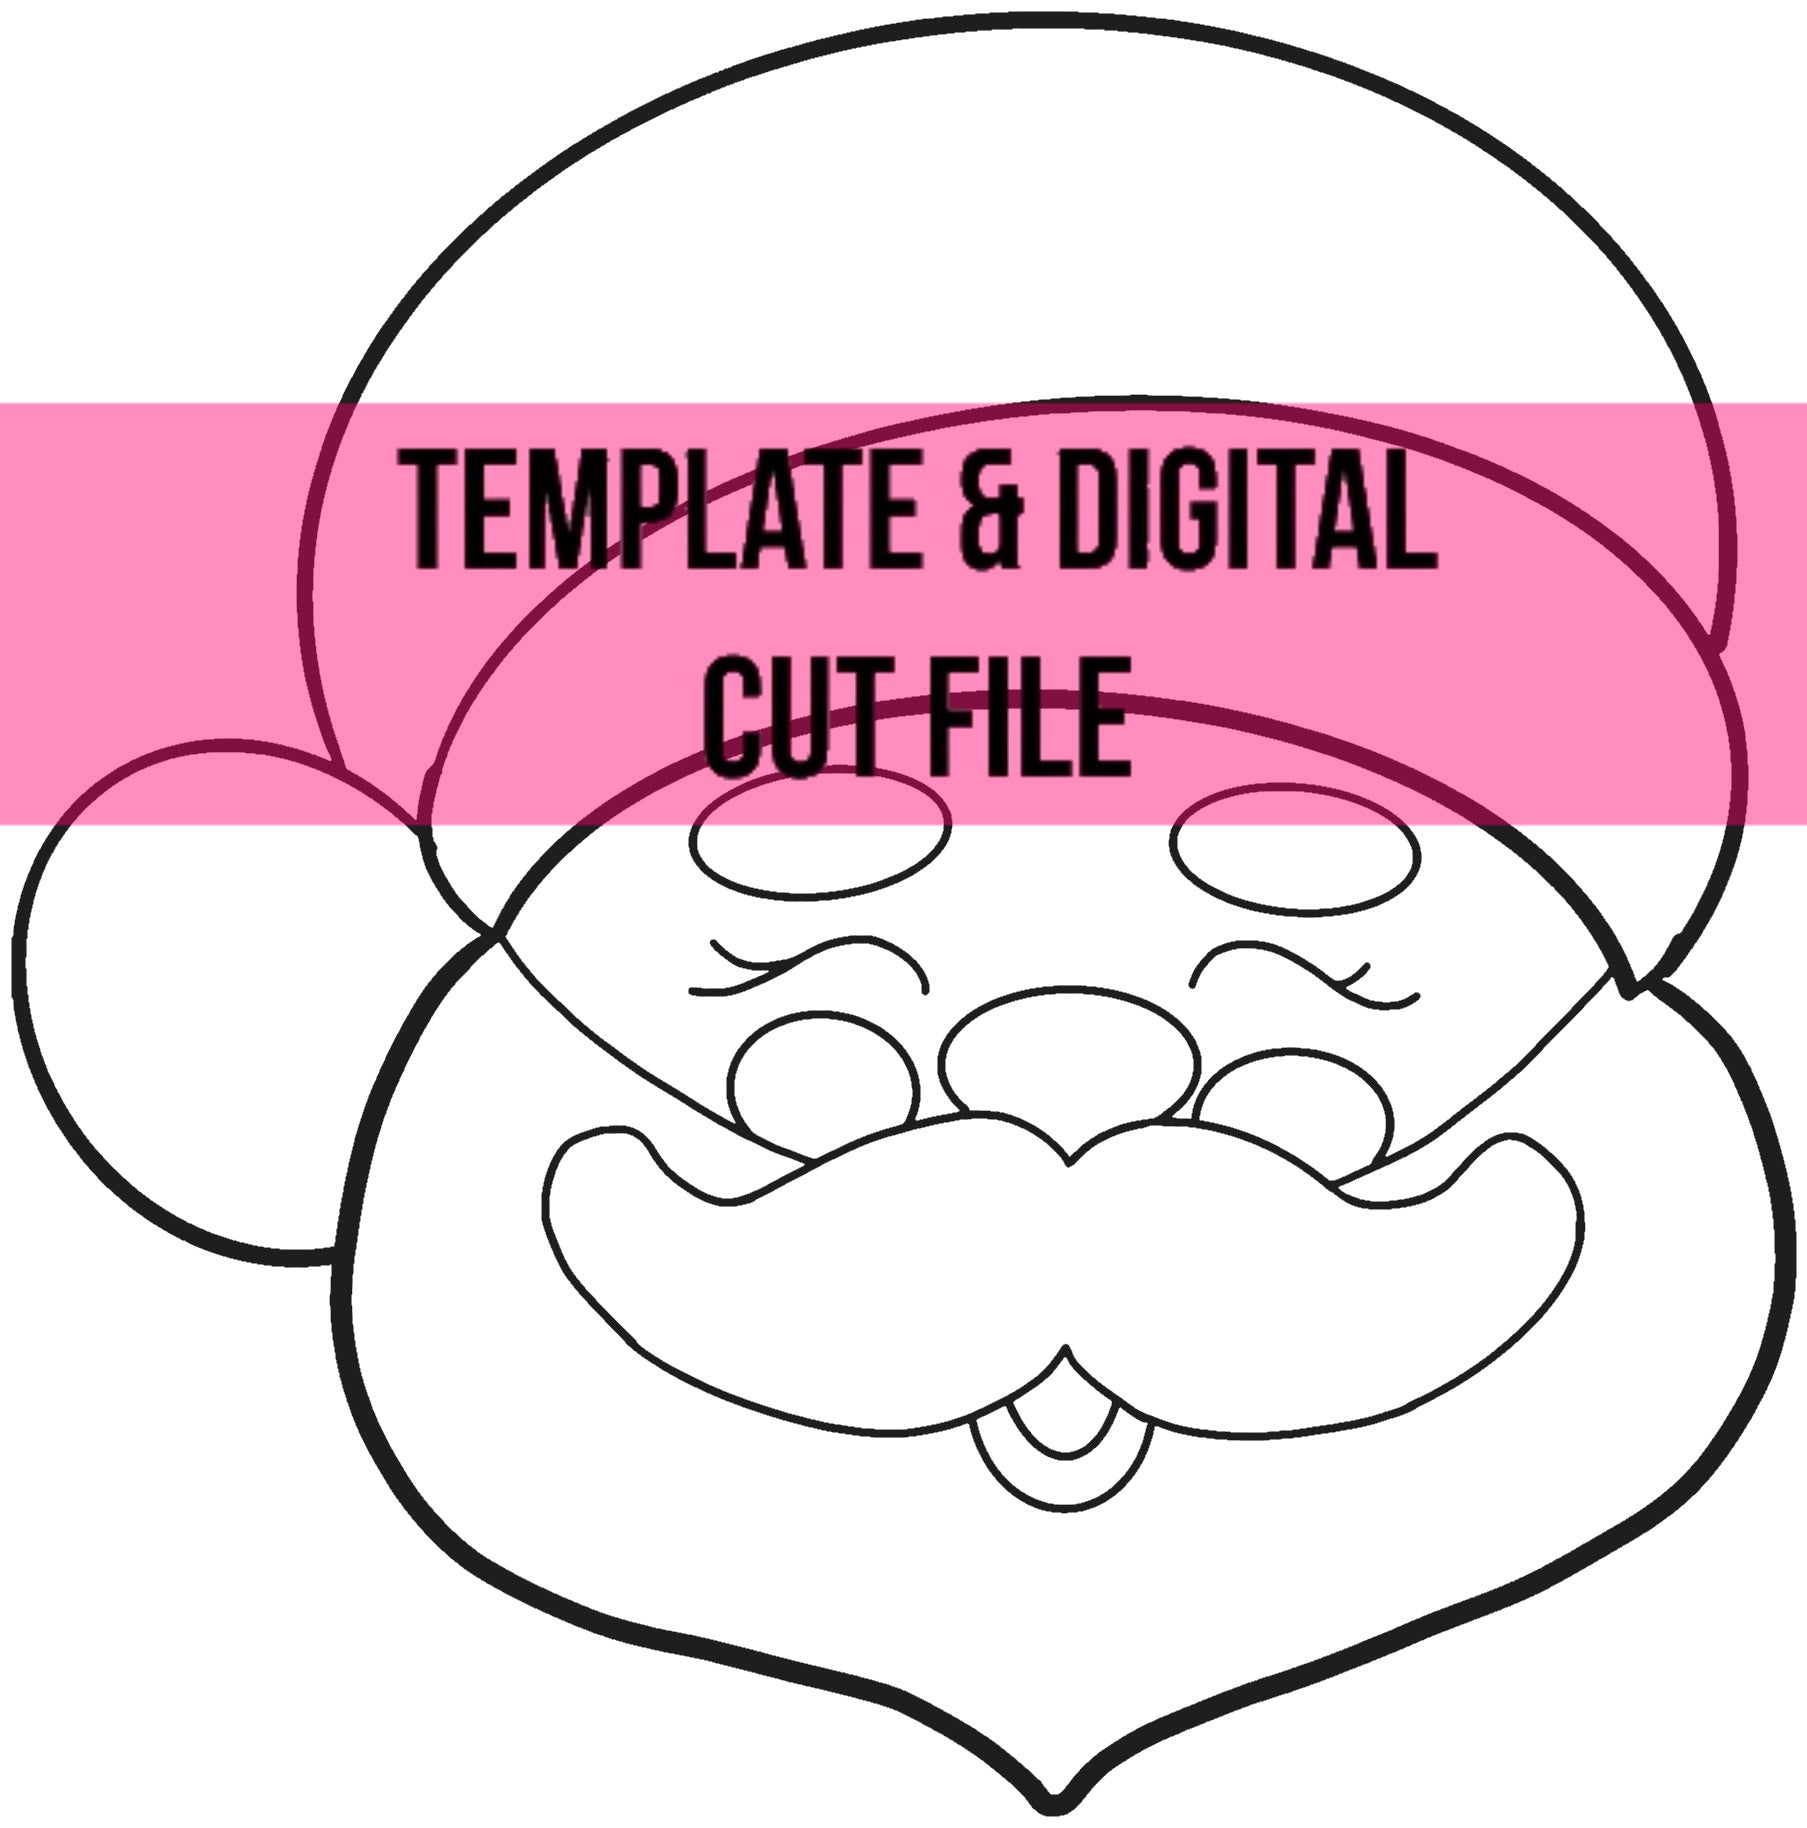 Mr. Claus Template & Digital Cut File